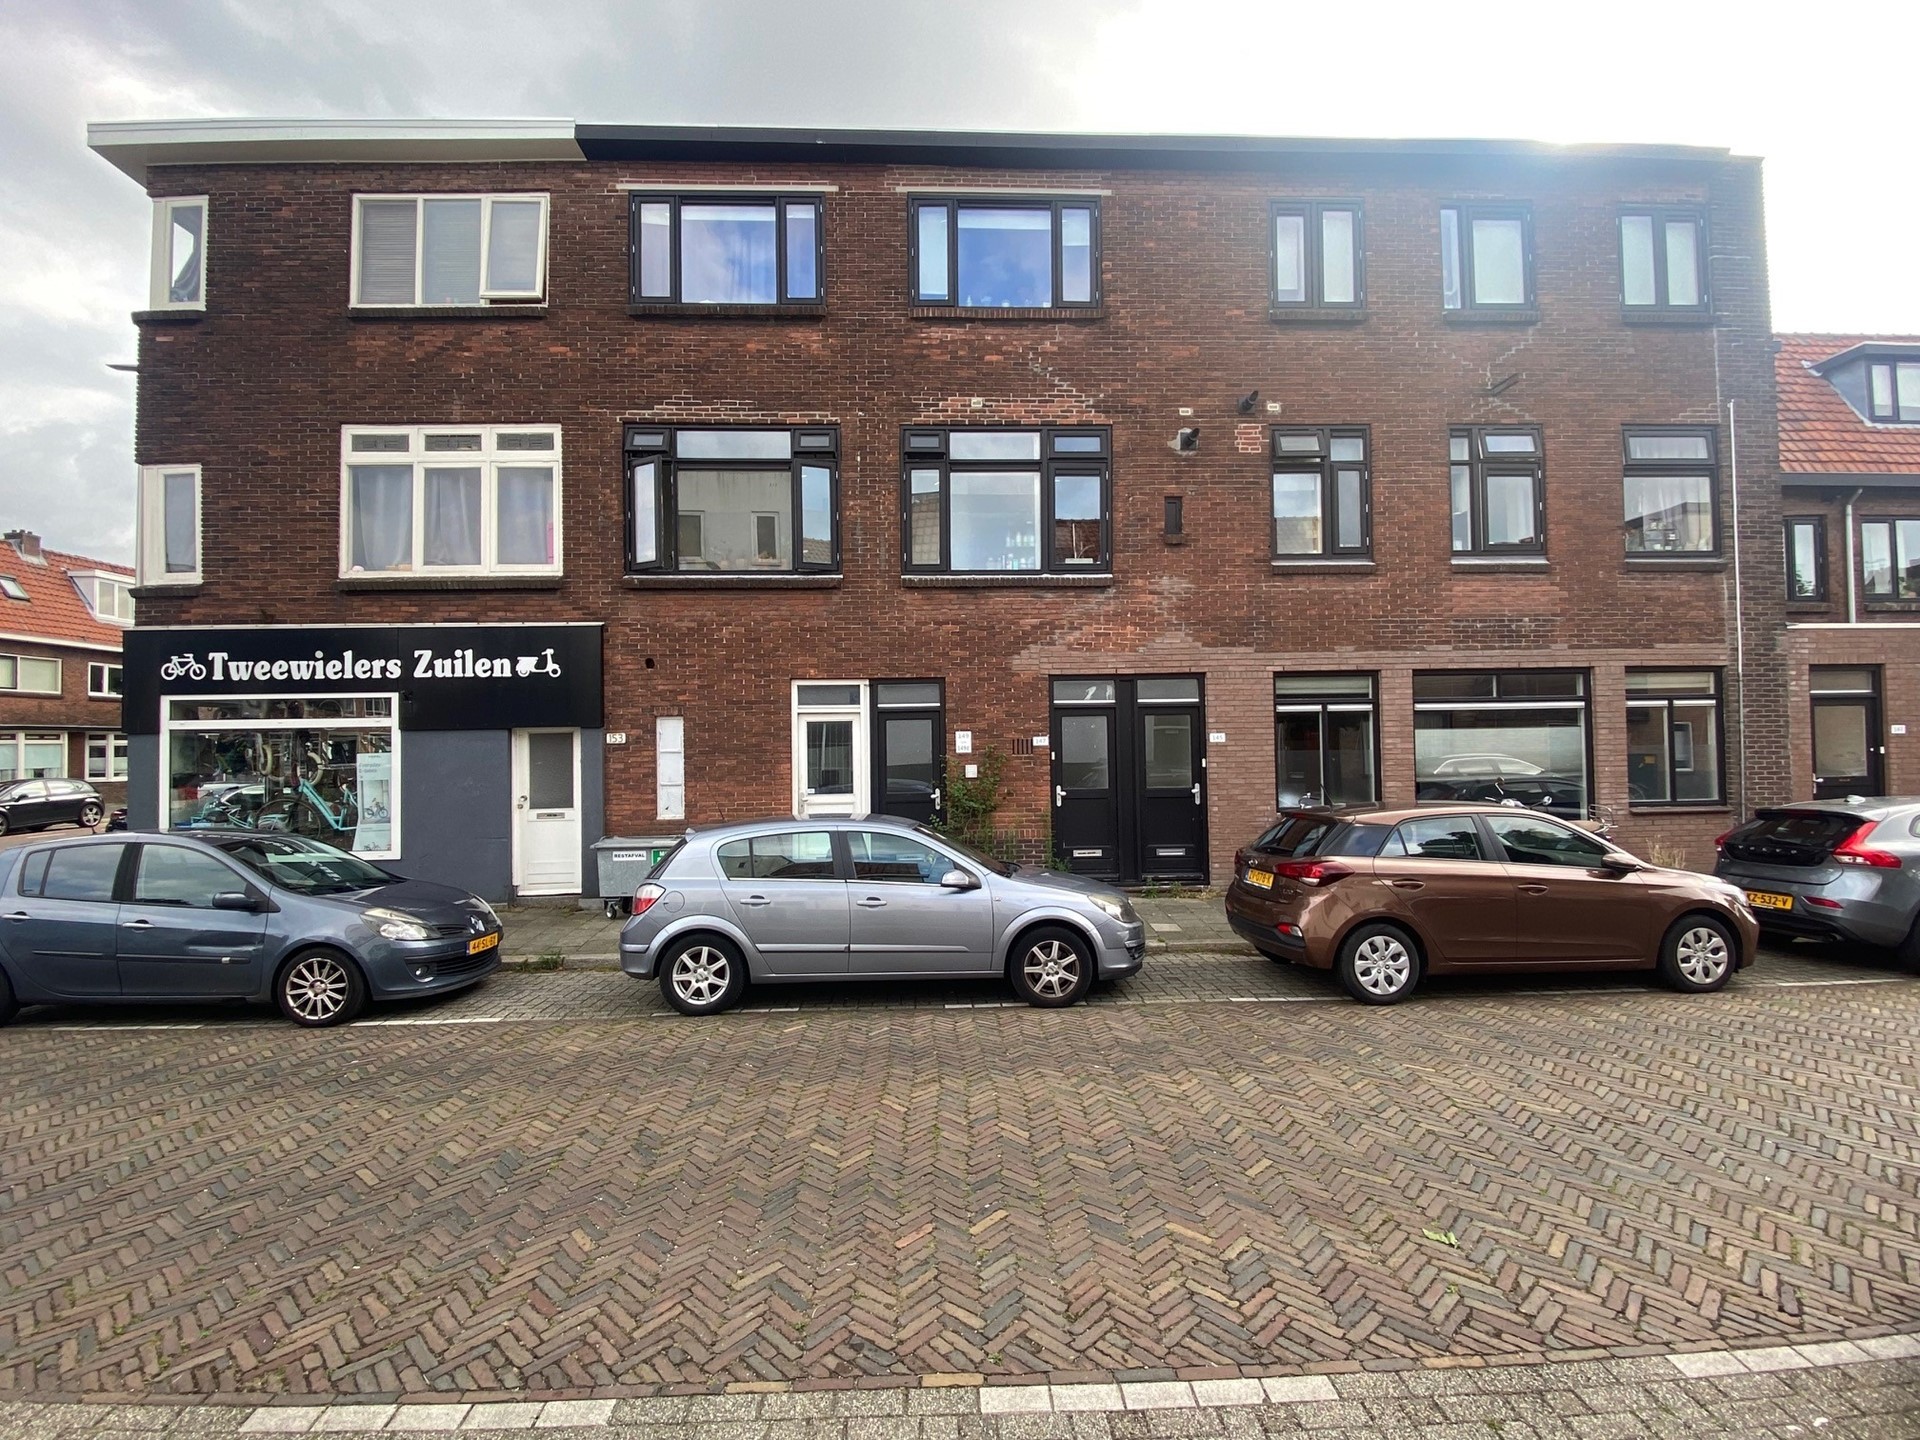 Bekijk foto 1/11 van apartment in Utrecht